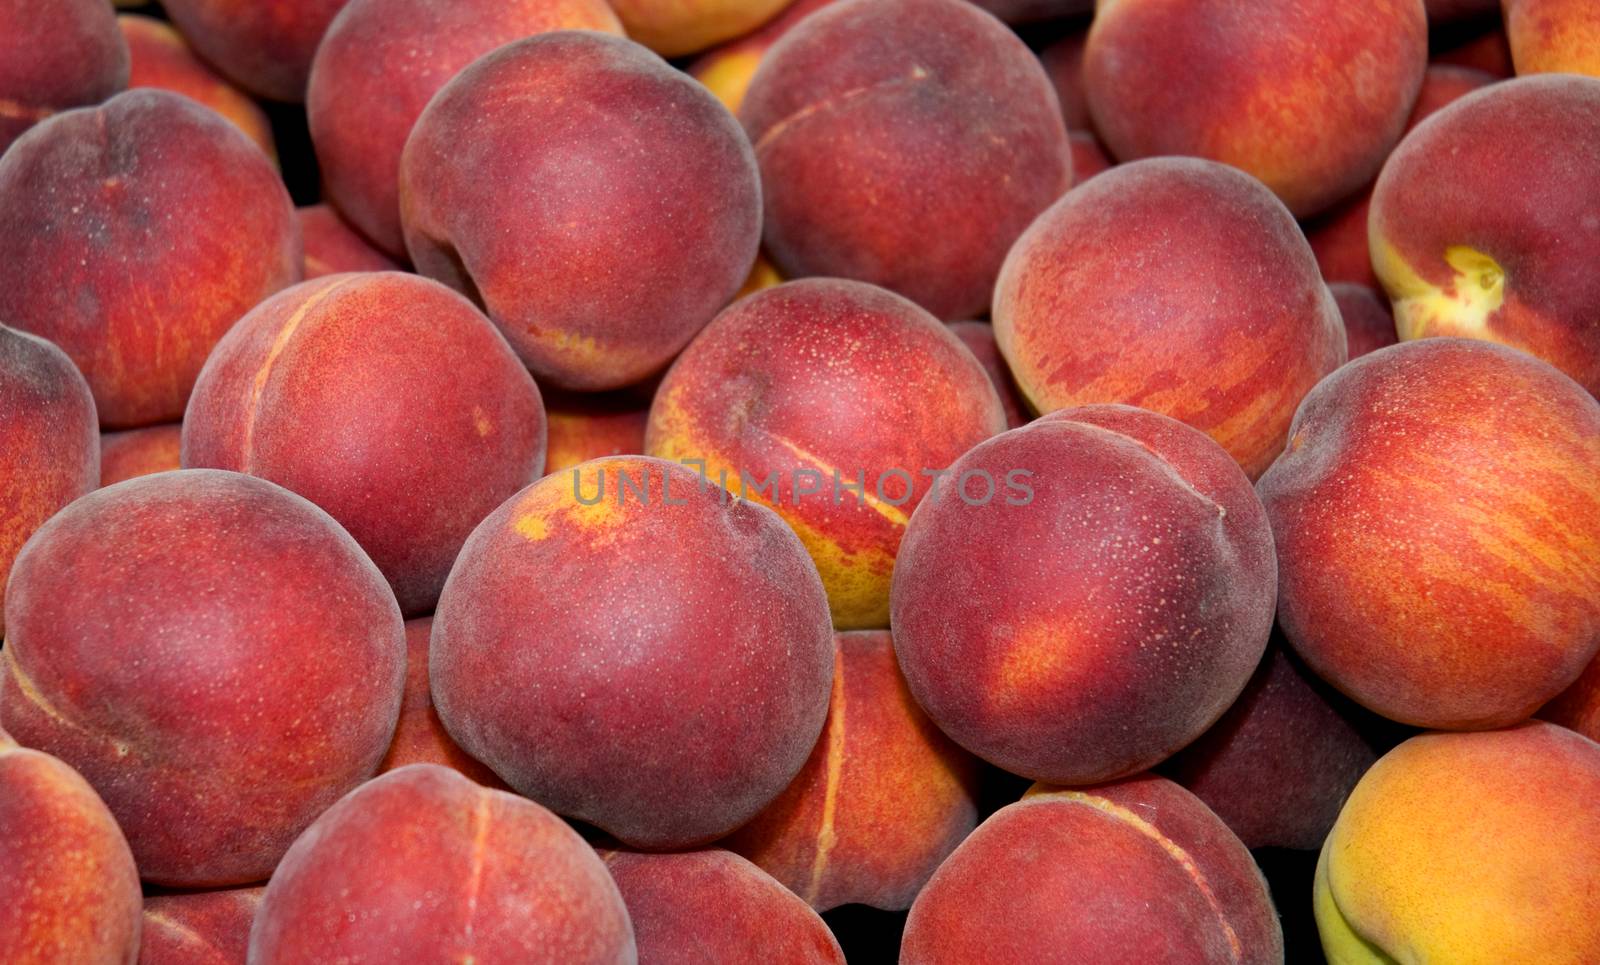 A tray of fresh peaches